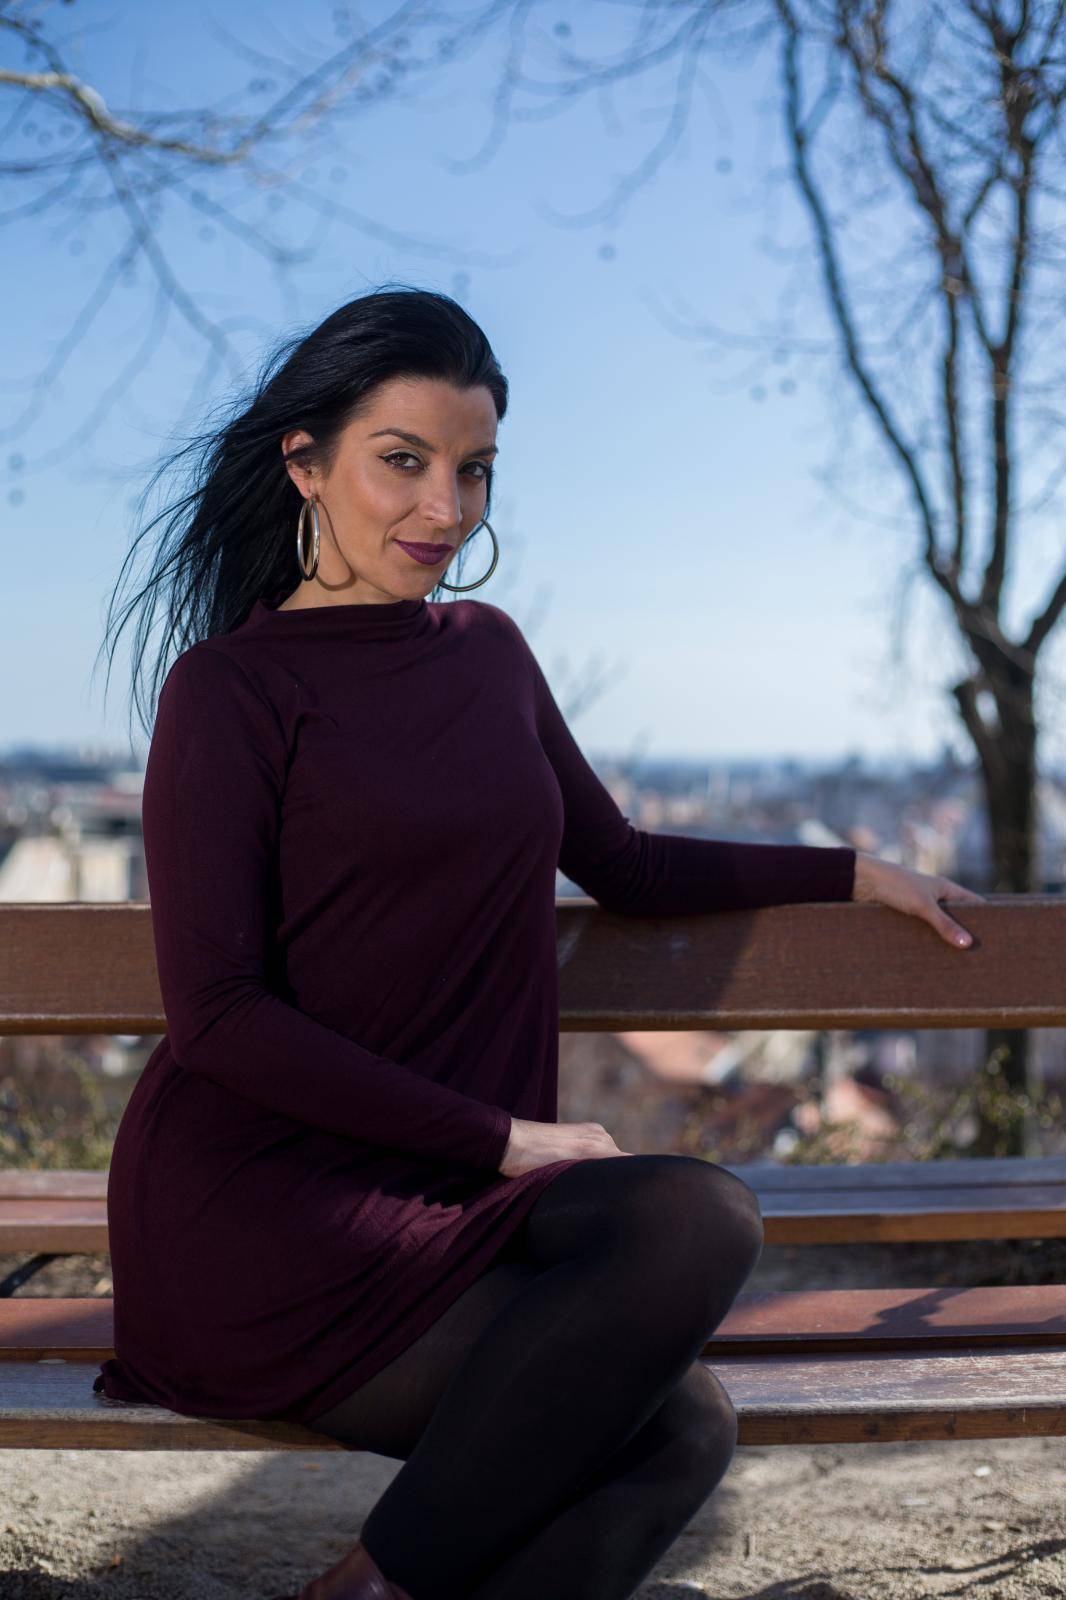 Makedonska pjevačica: Želja mi je da se preselim se u Hrvatsku